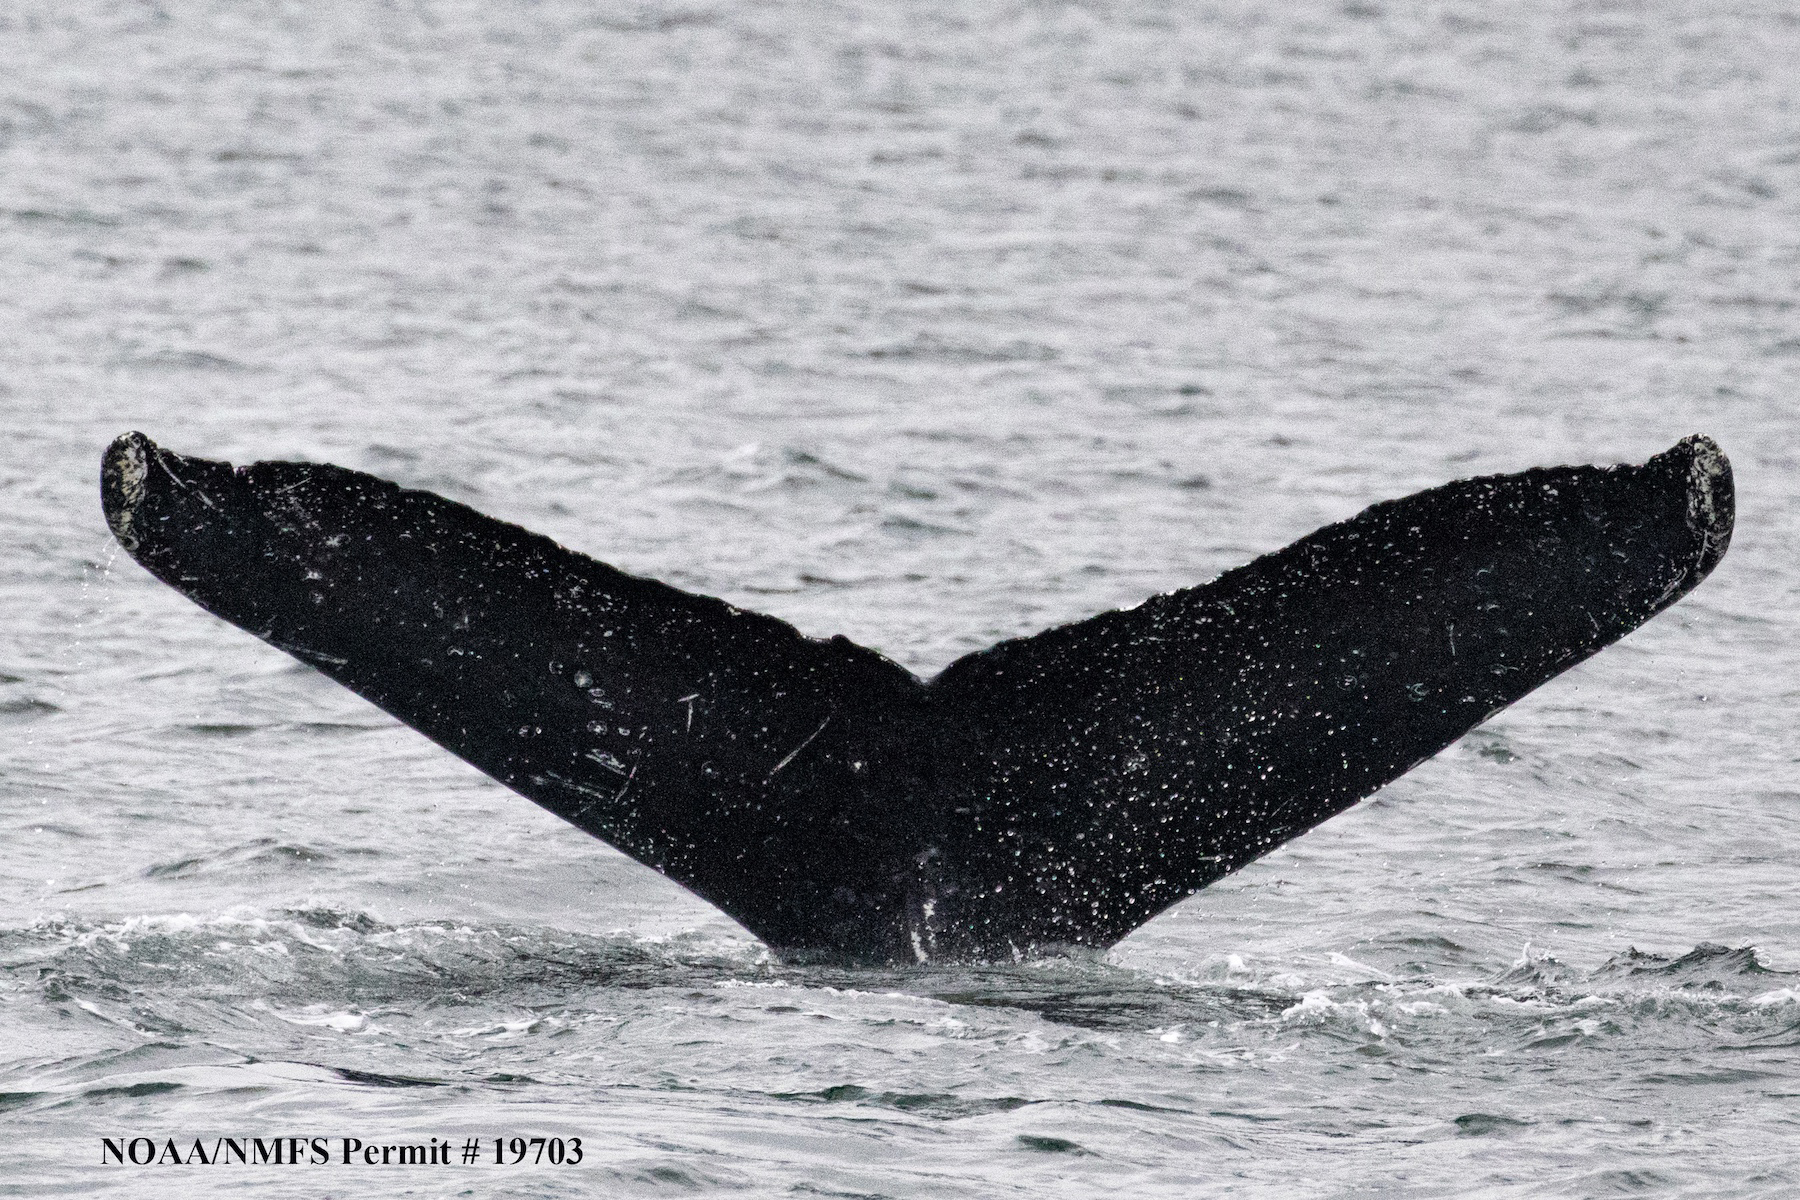 The fluke of Twain, a 38-year-old female humpback whale, in Frederick Sound Alaska. (Jodi Frediani)